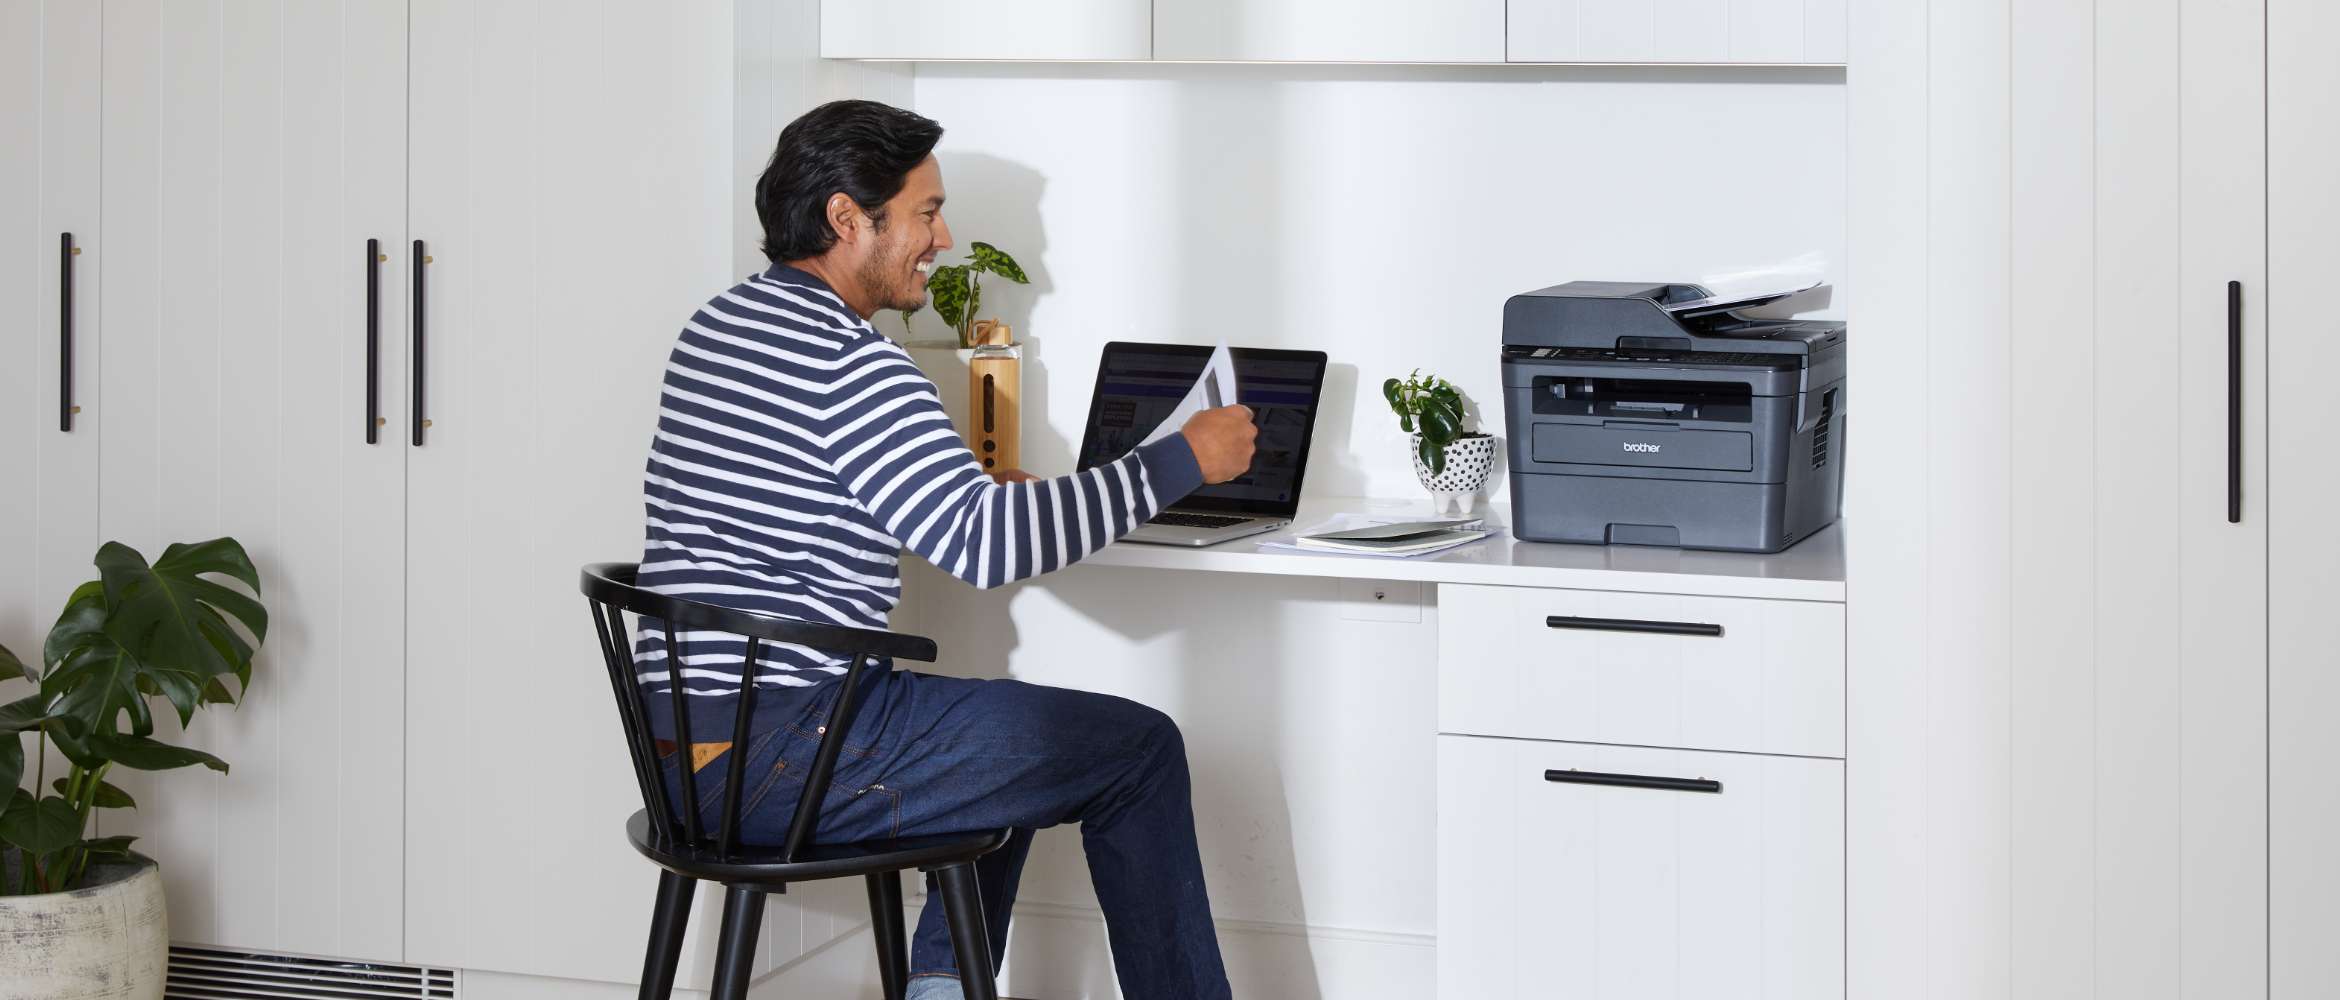 Een man zit in zijn hybride kantoor en werkt op afstand vanuit huis. Hij bekijkt een document dat is afgedrukt met een Brother-printer.